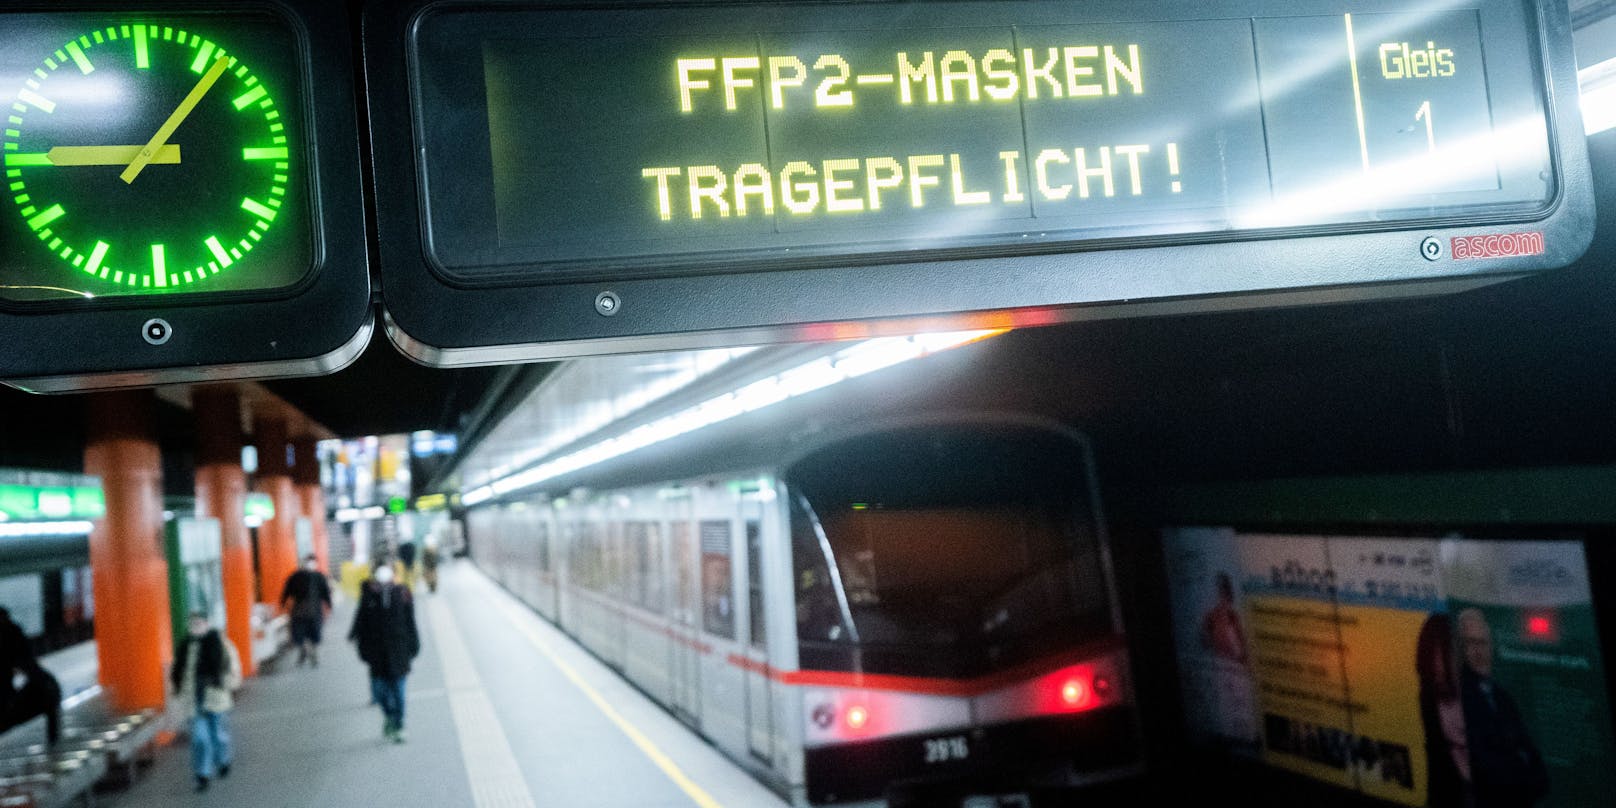 In Wien gilt in allen Öffis wieder FFP2-Maskenpflicht. Doch manche schaffen es noch immer nicht.